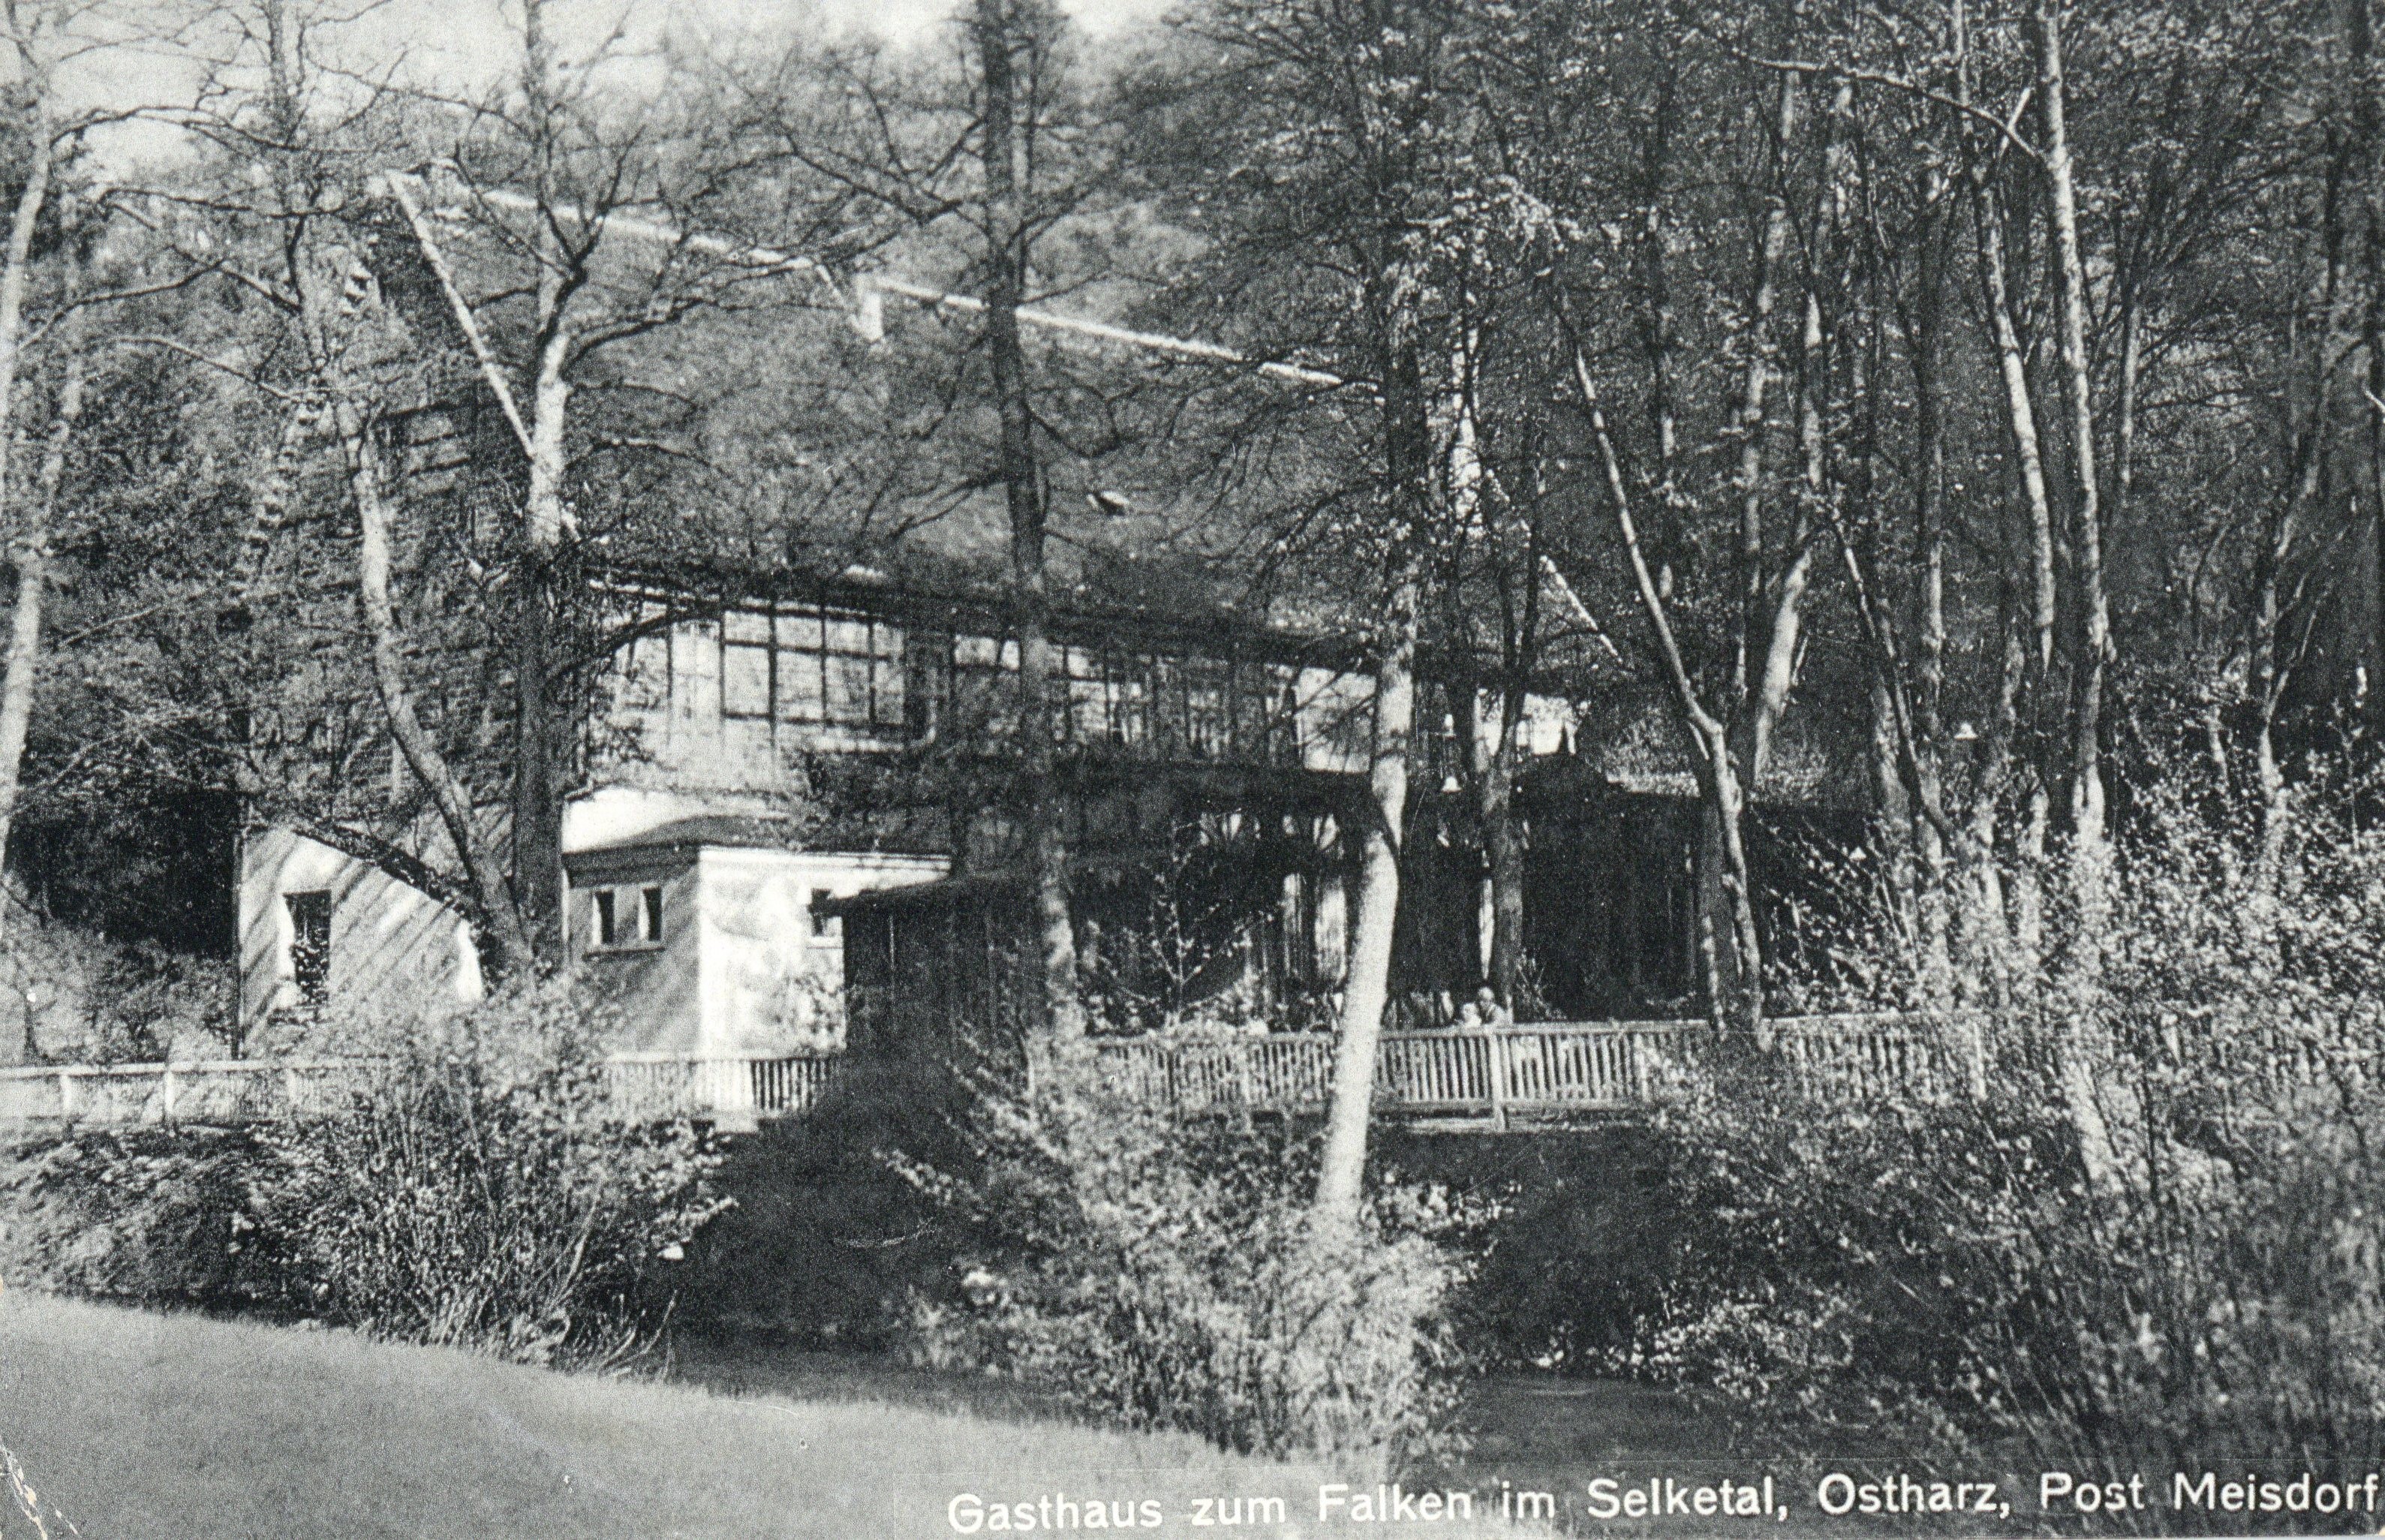 Ansichtskarte: Gasthaus zum Falken im Selketal, Ostharz, Post Meisdorf (Kulturstiftung Sachsen-Anhalt CC BY-NC-SA)